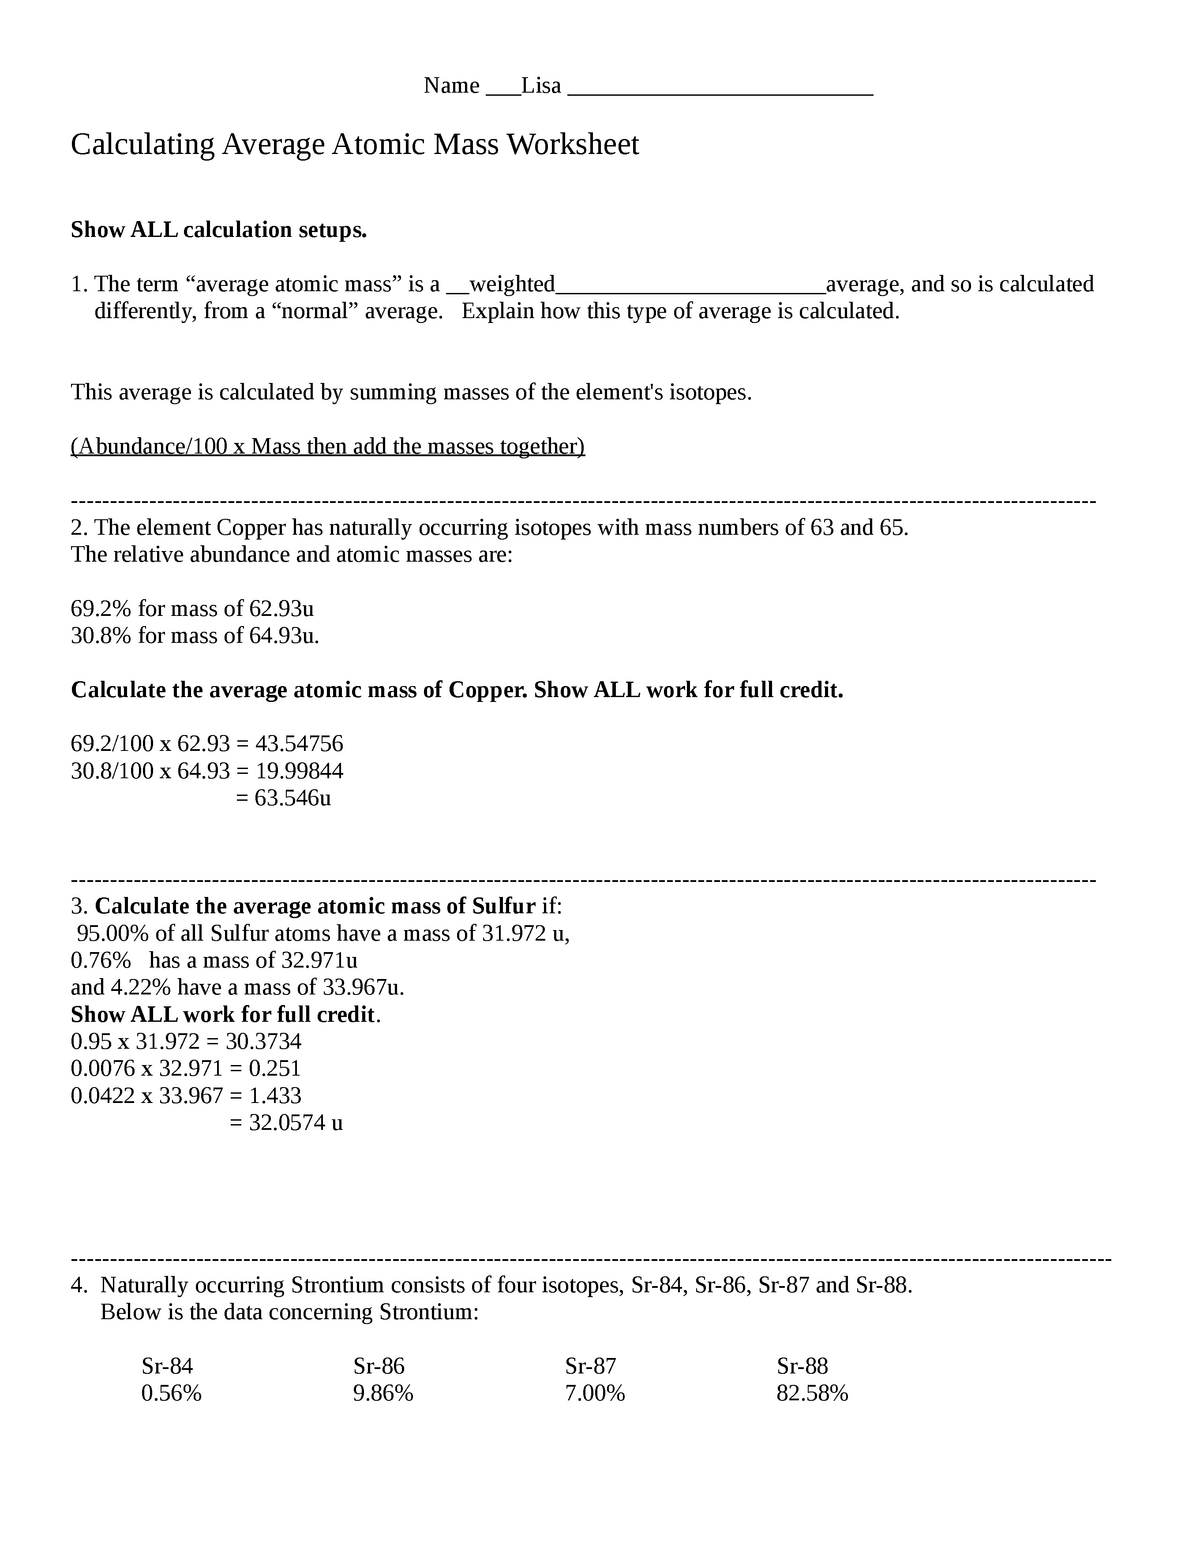 Calculating Average Atomic Mass Worksheet - Name ___Lisa Intended For Average Atomic Mass Worksheet